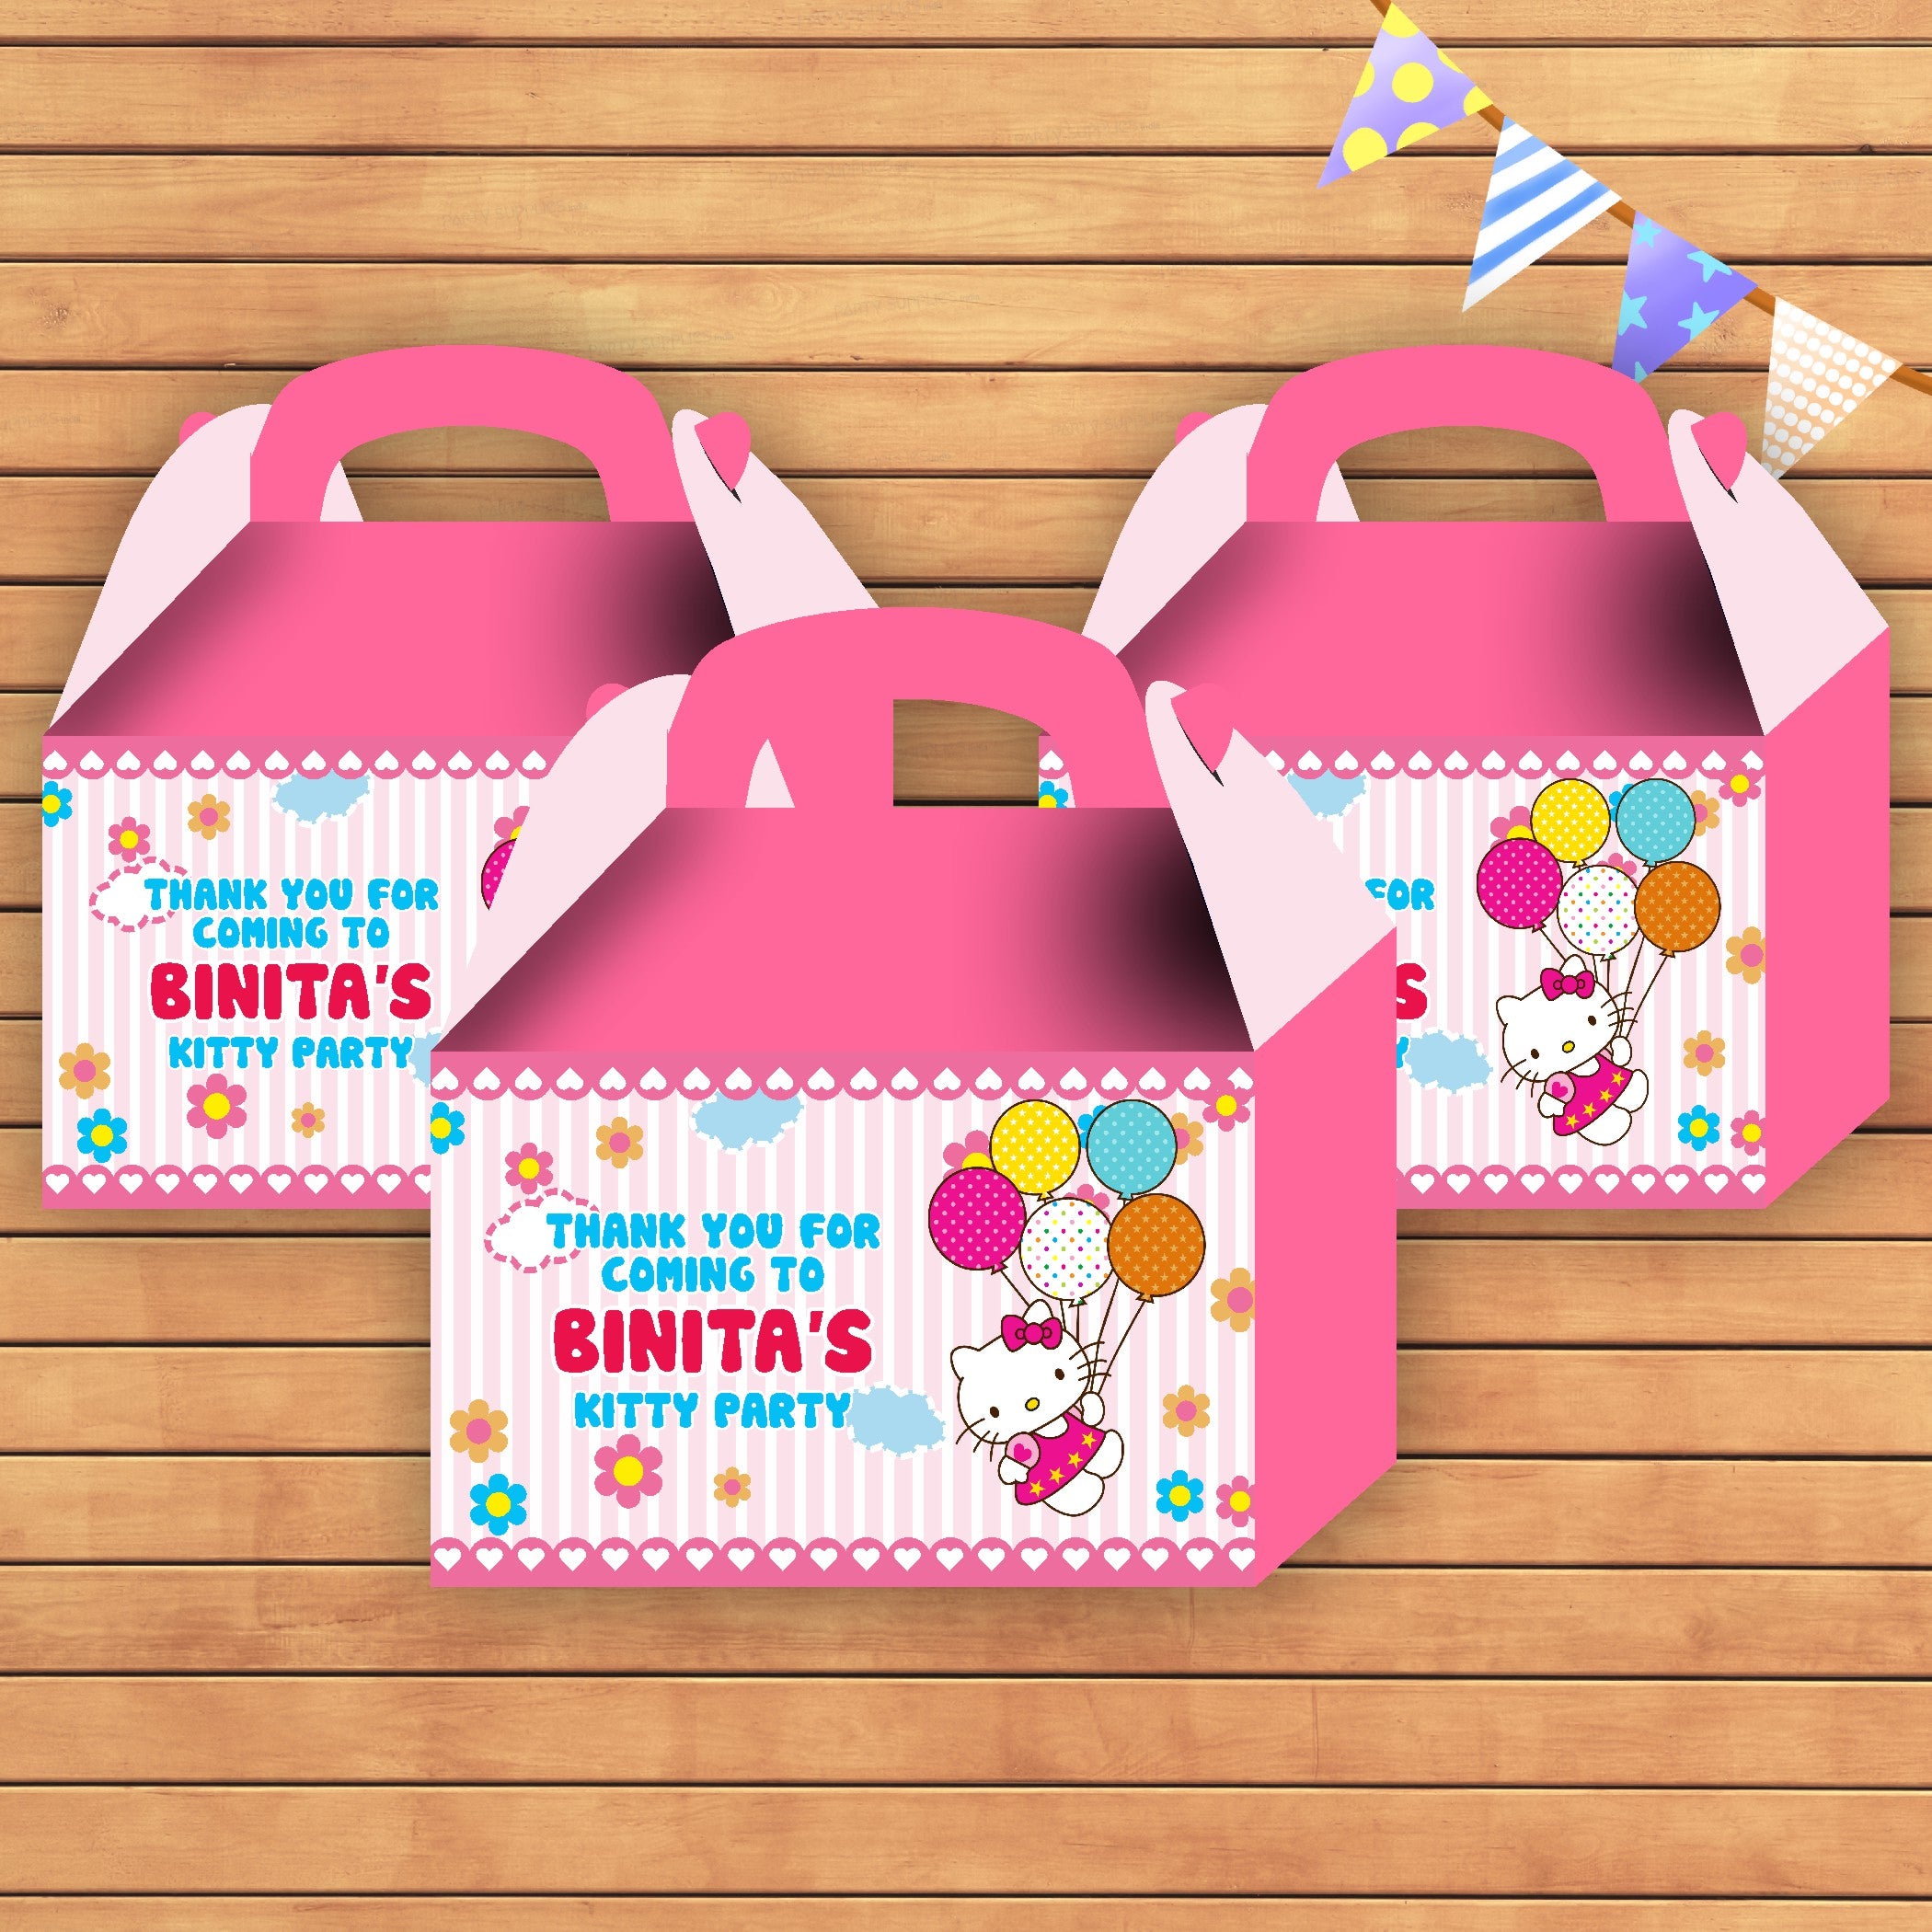 PSI Hello Kitty theme Goodie Return Gift Boxes